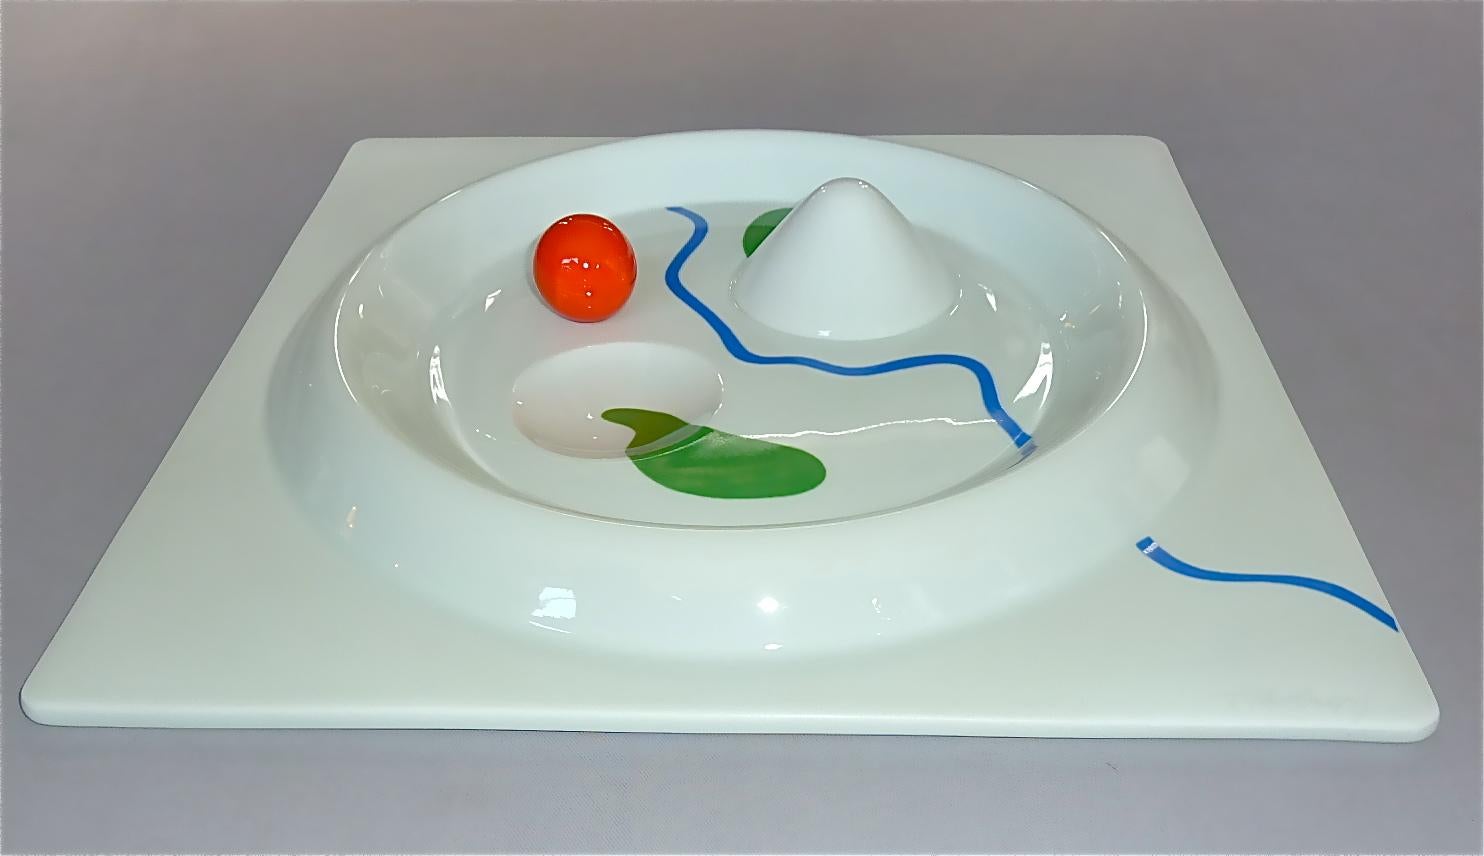 Glazed Herbert Bayer Art Porcelain Plate Rosenthal Limiterte Kunstreihen, 1982 Bauhaus For Sale